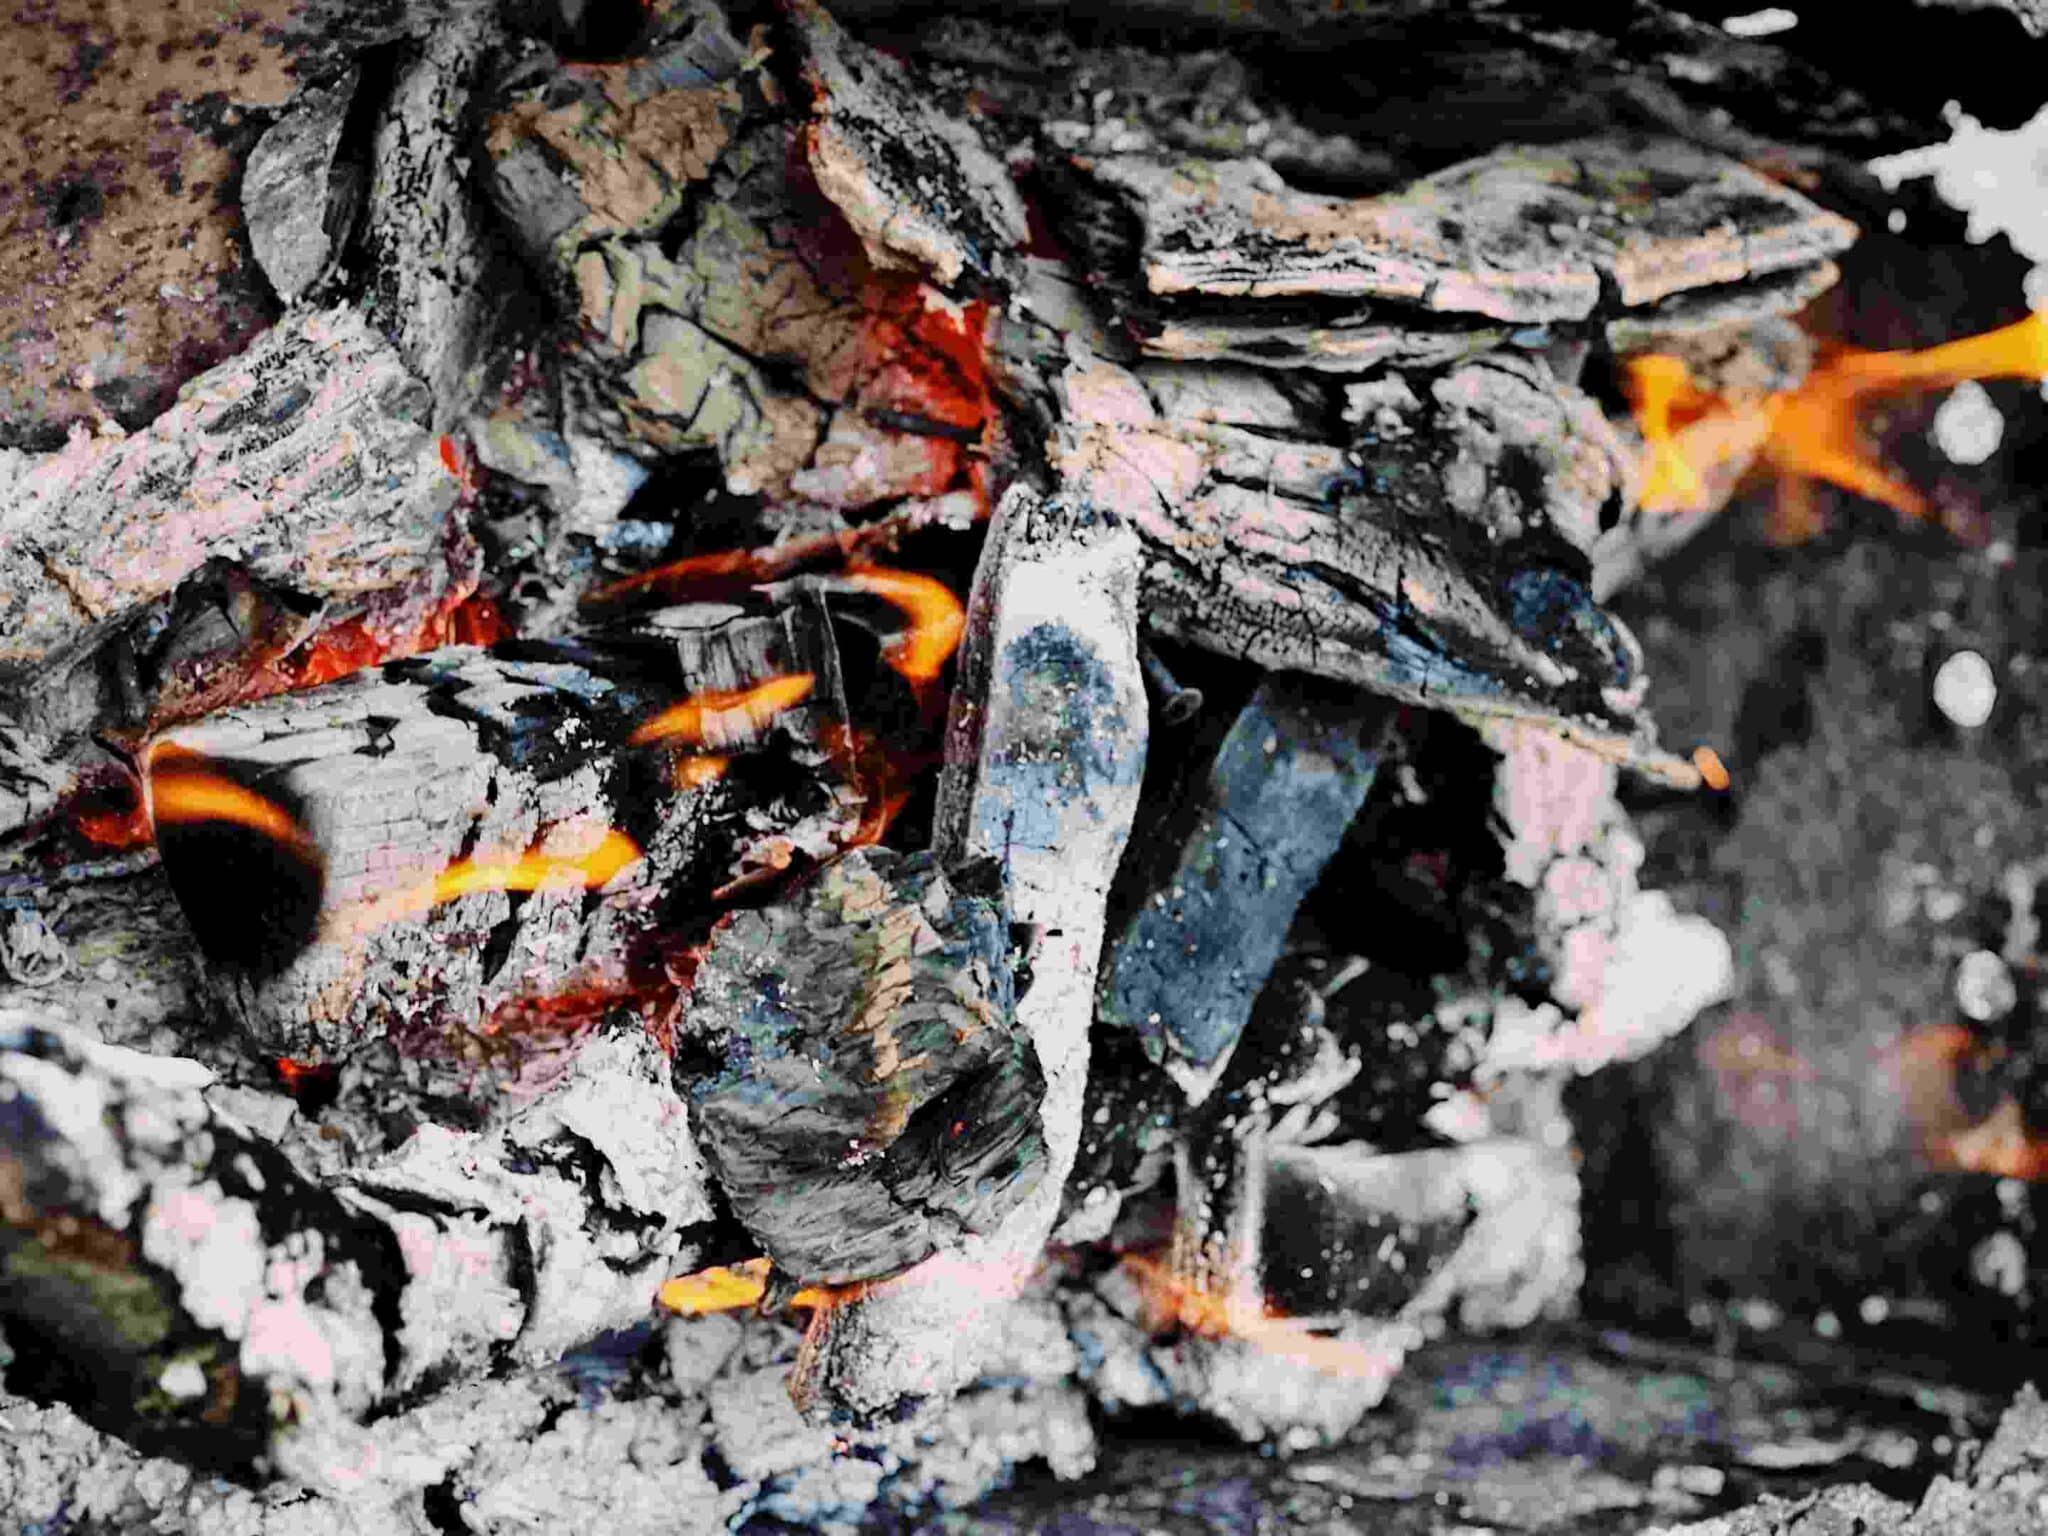 Six façons innovantes de recycler les cendres de cheminée